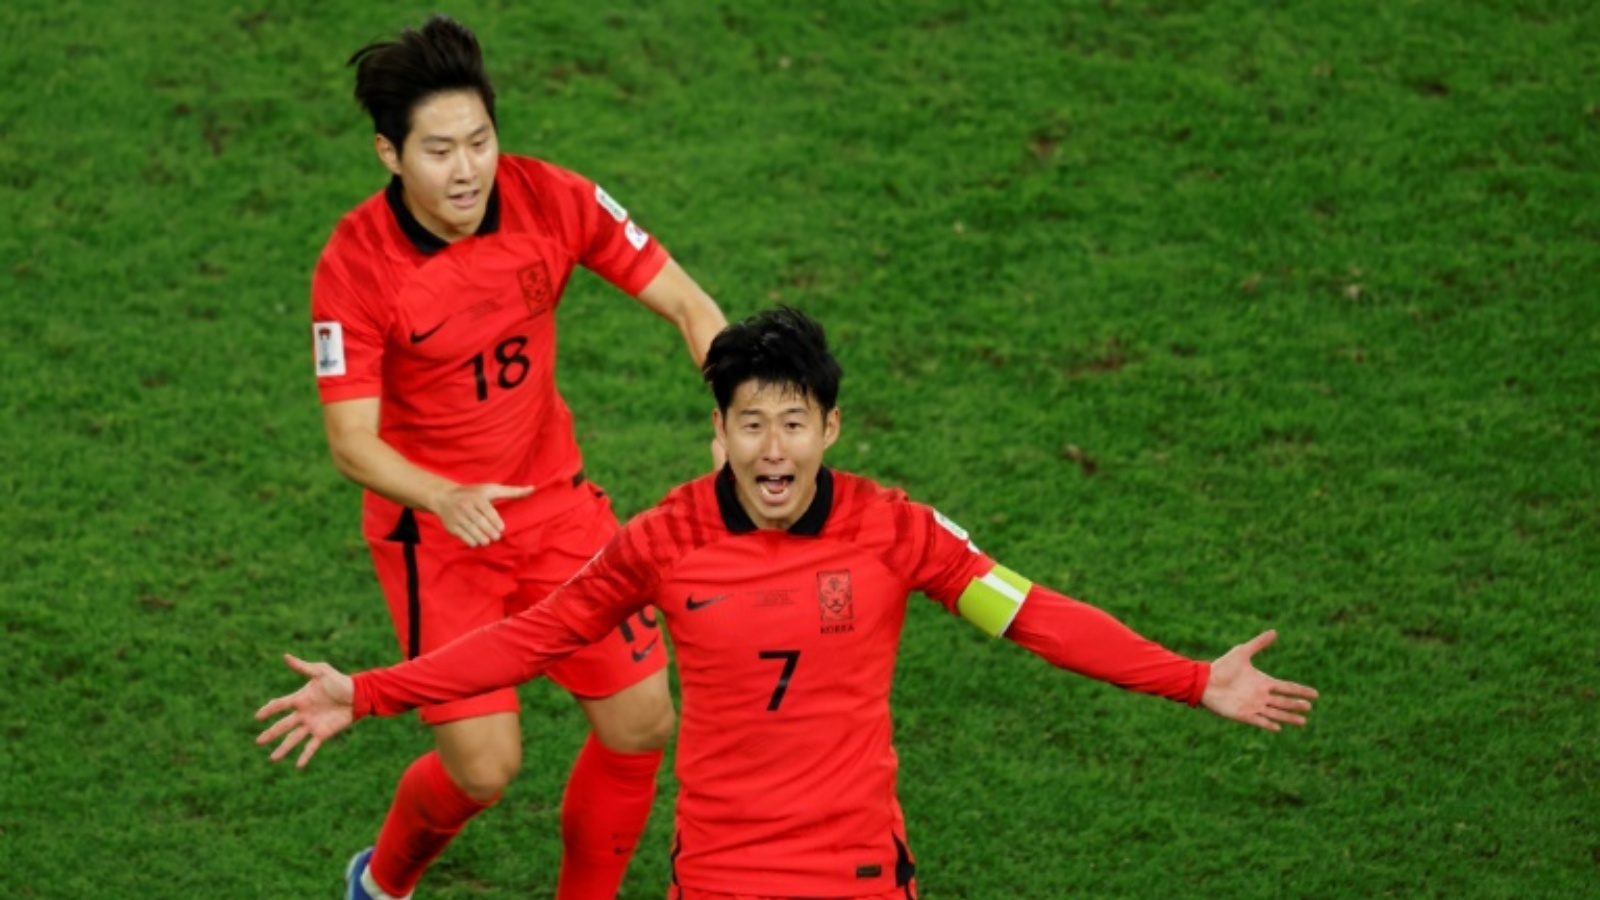 قائد كوريا الجنوبية هيونغ مين سون يحتفل بتسجيله هدف الفوز في مرمى استراليا (2-1 بعد التمديد) في ربع نهائي كأس اسيا في قطر في الثاني من شباط (فبراير) 2024